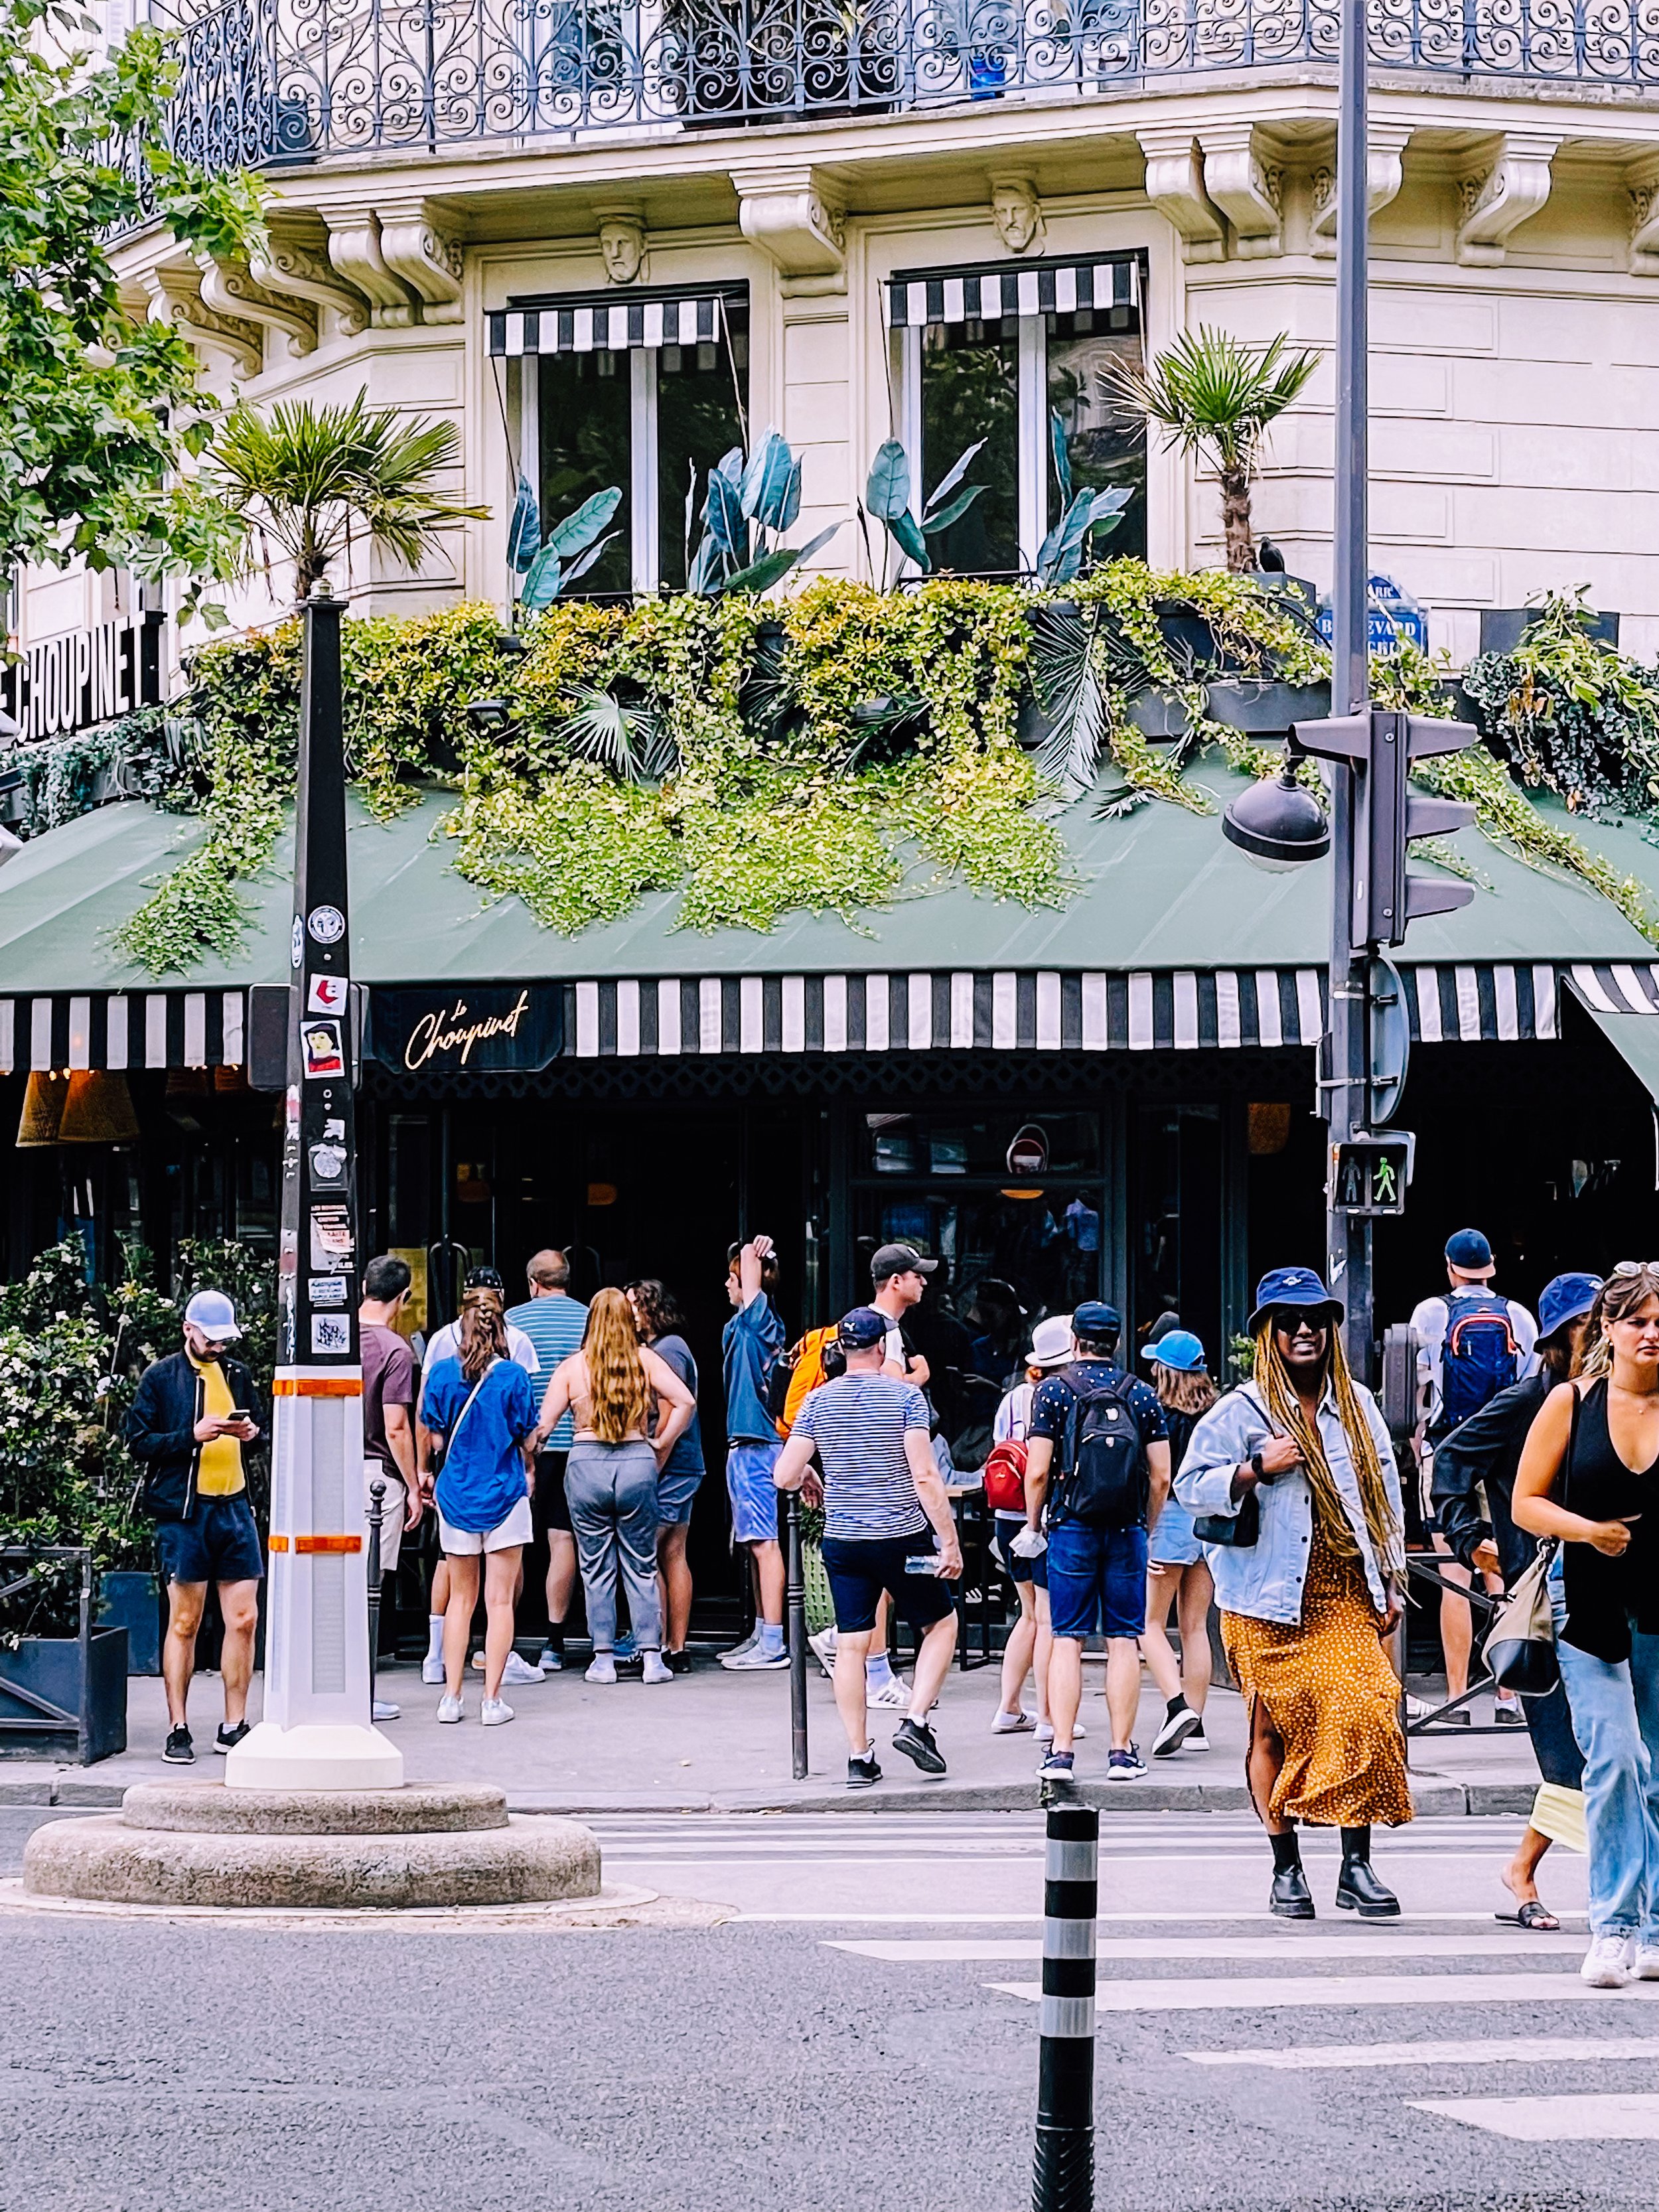 Joyful Urbanist_Paris Street Cafe 1R.jpg